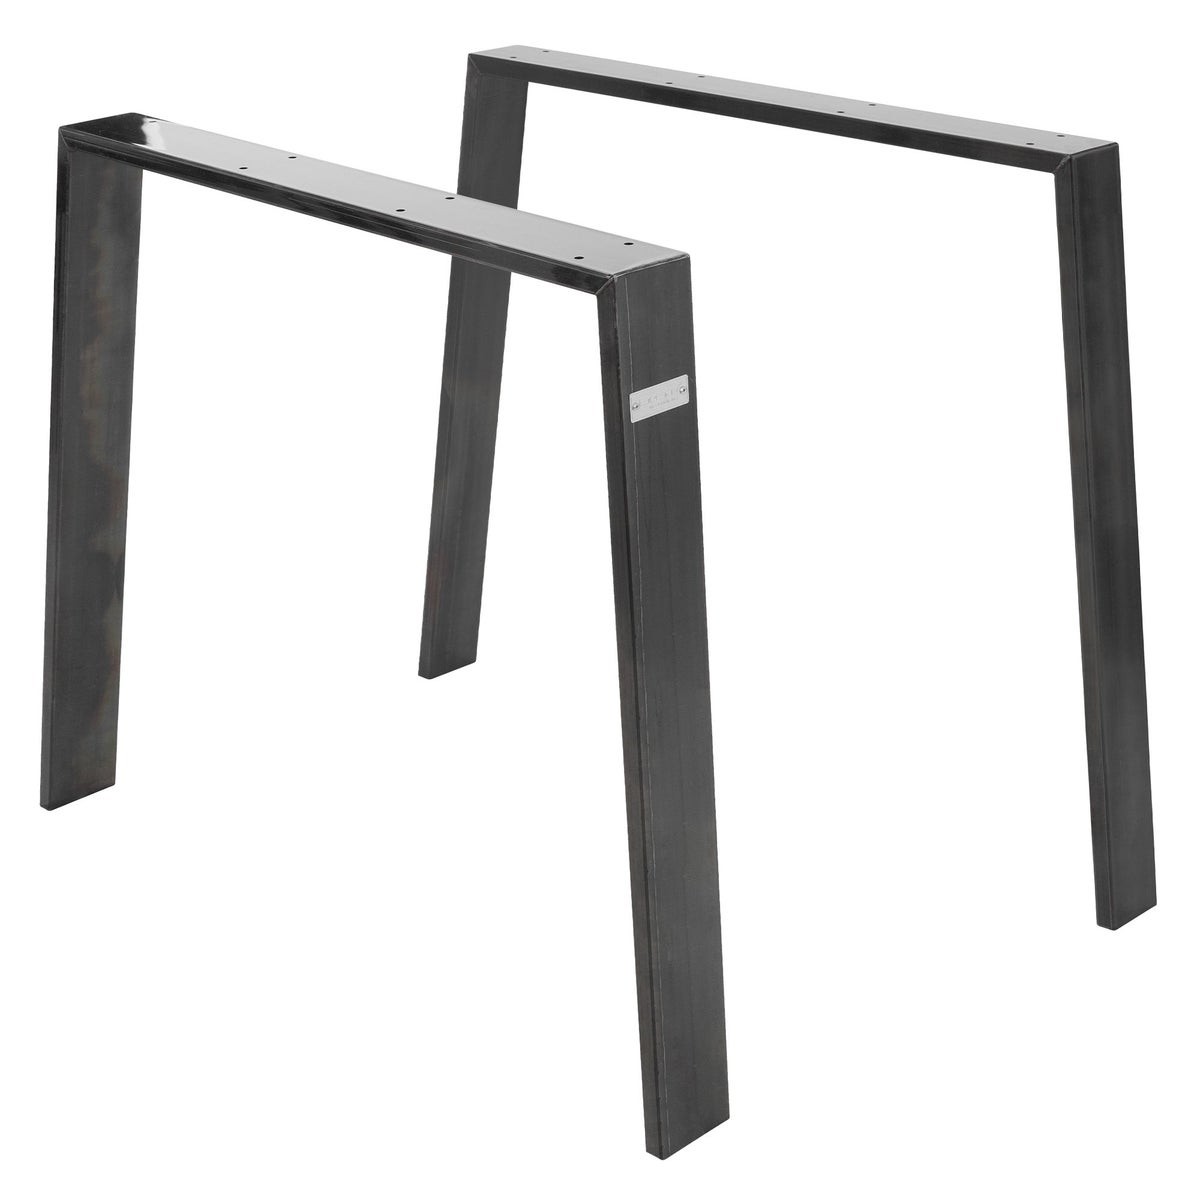 ML-Design 2er Set Tischbeine Loft 90x72 cm, Industrial, Profil 8x2cm, aus Stahl, Industriedesign, U-Form, Metall Tischgestell scandic, Tischkufen Tischuntergestell Möbelfüße, für Esstisch/Schreibtisch